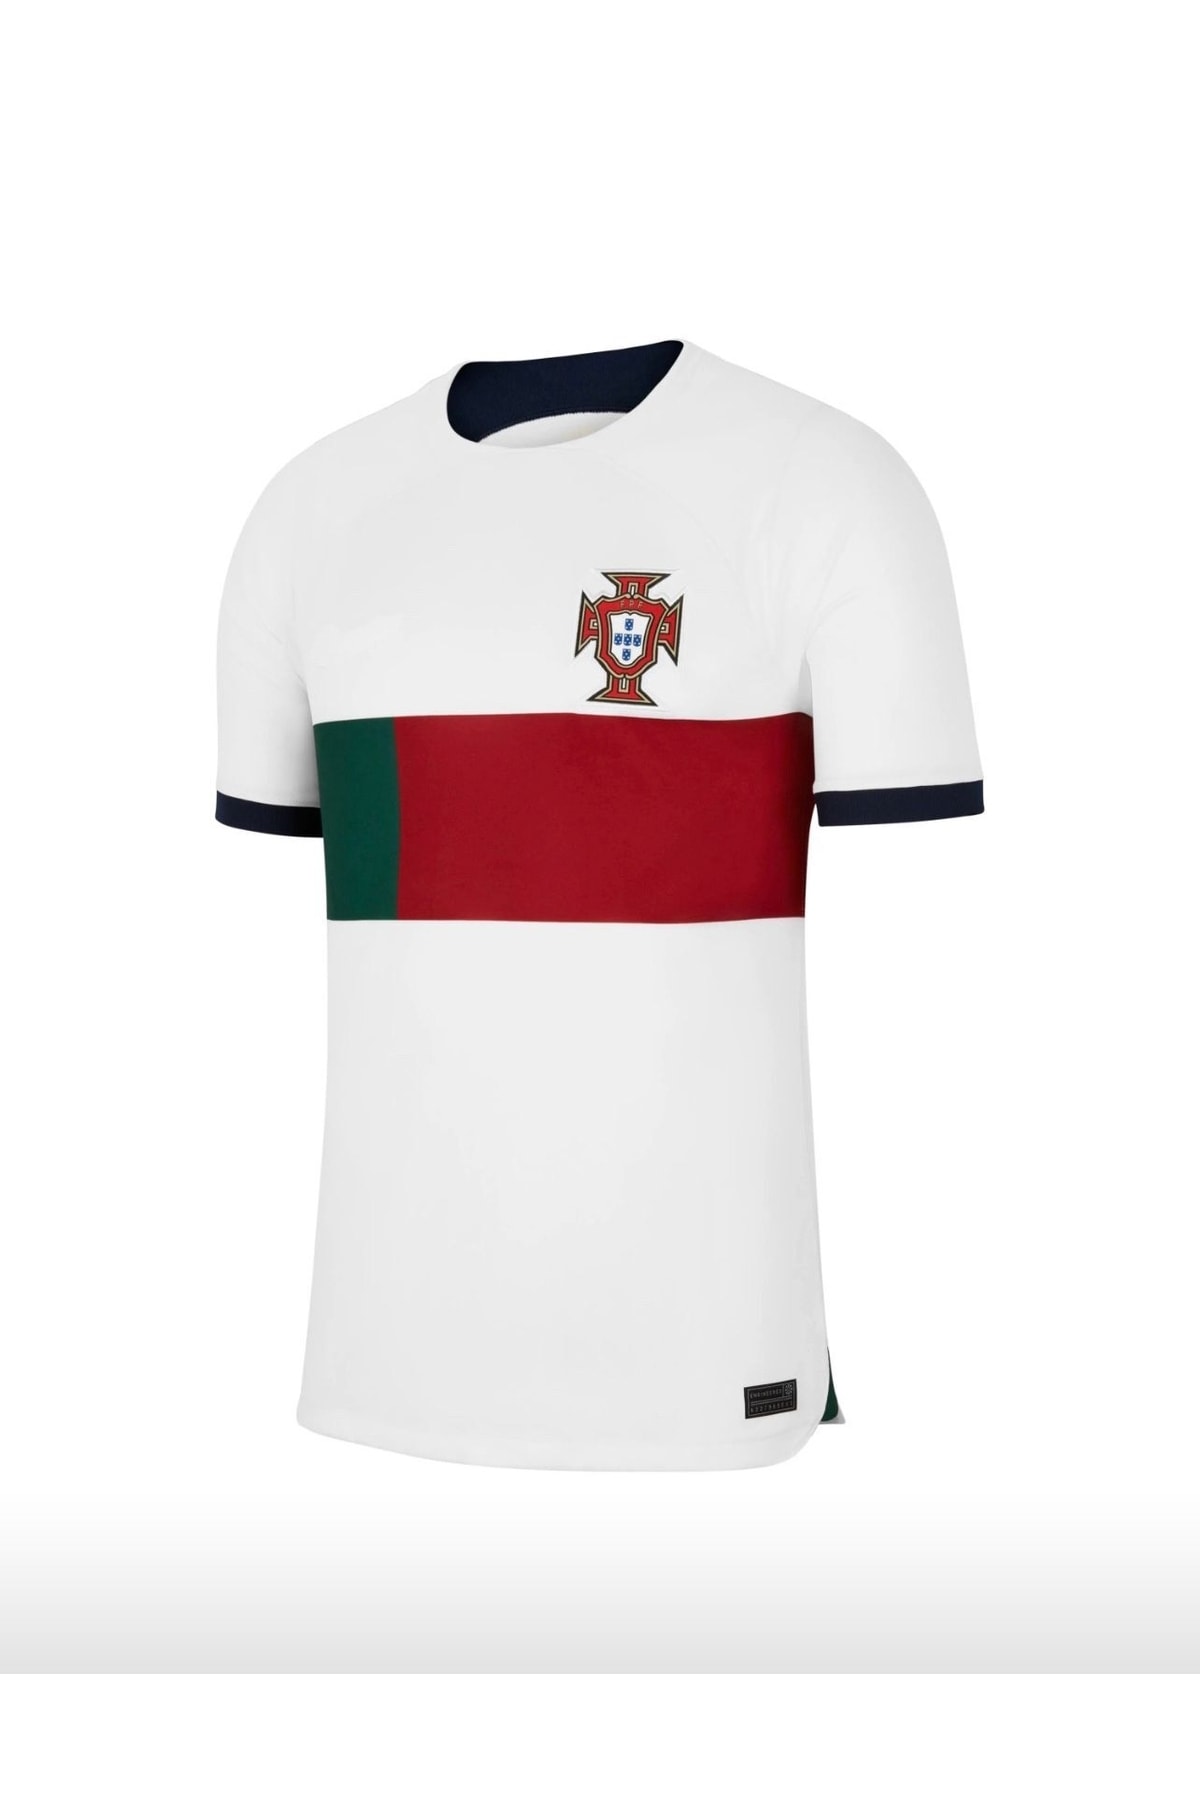 Lion Spor Ronaldo Portekiz Milli Takım Beyaz Deplasman Çocuk Forması